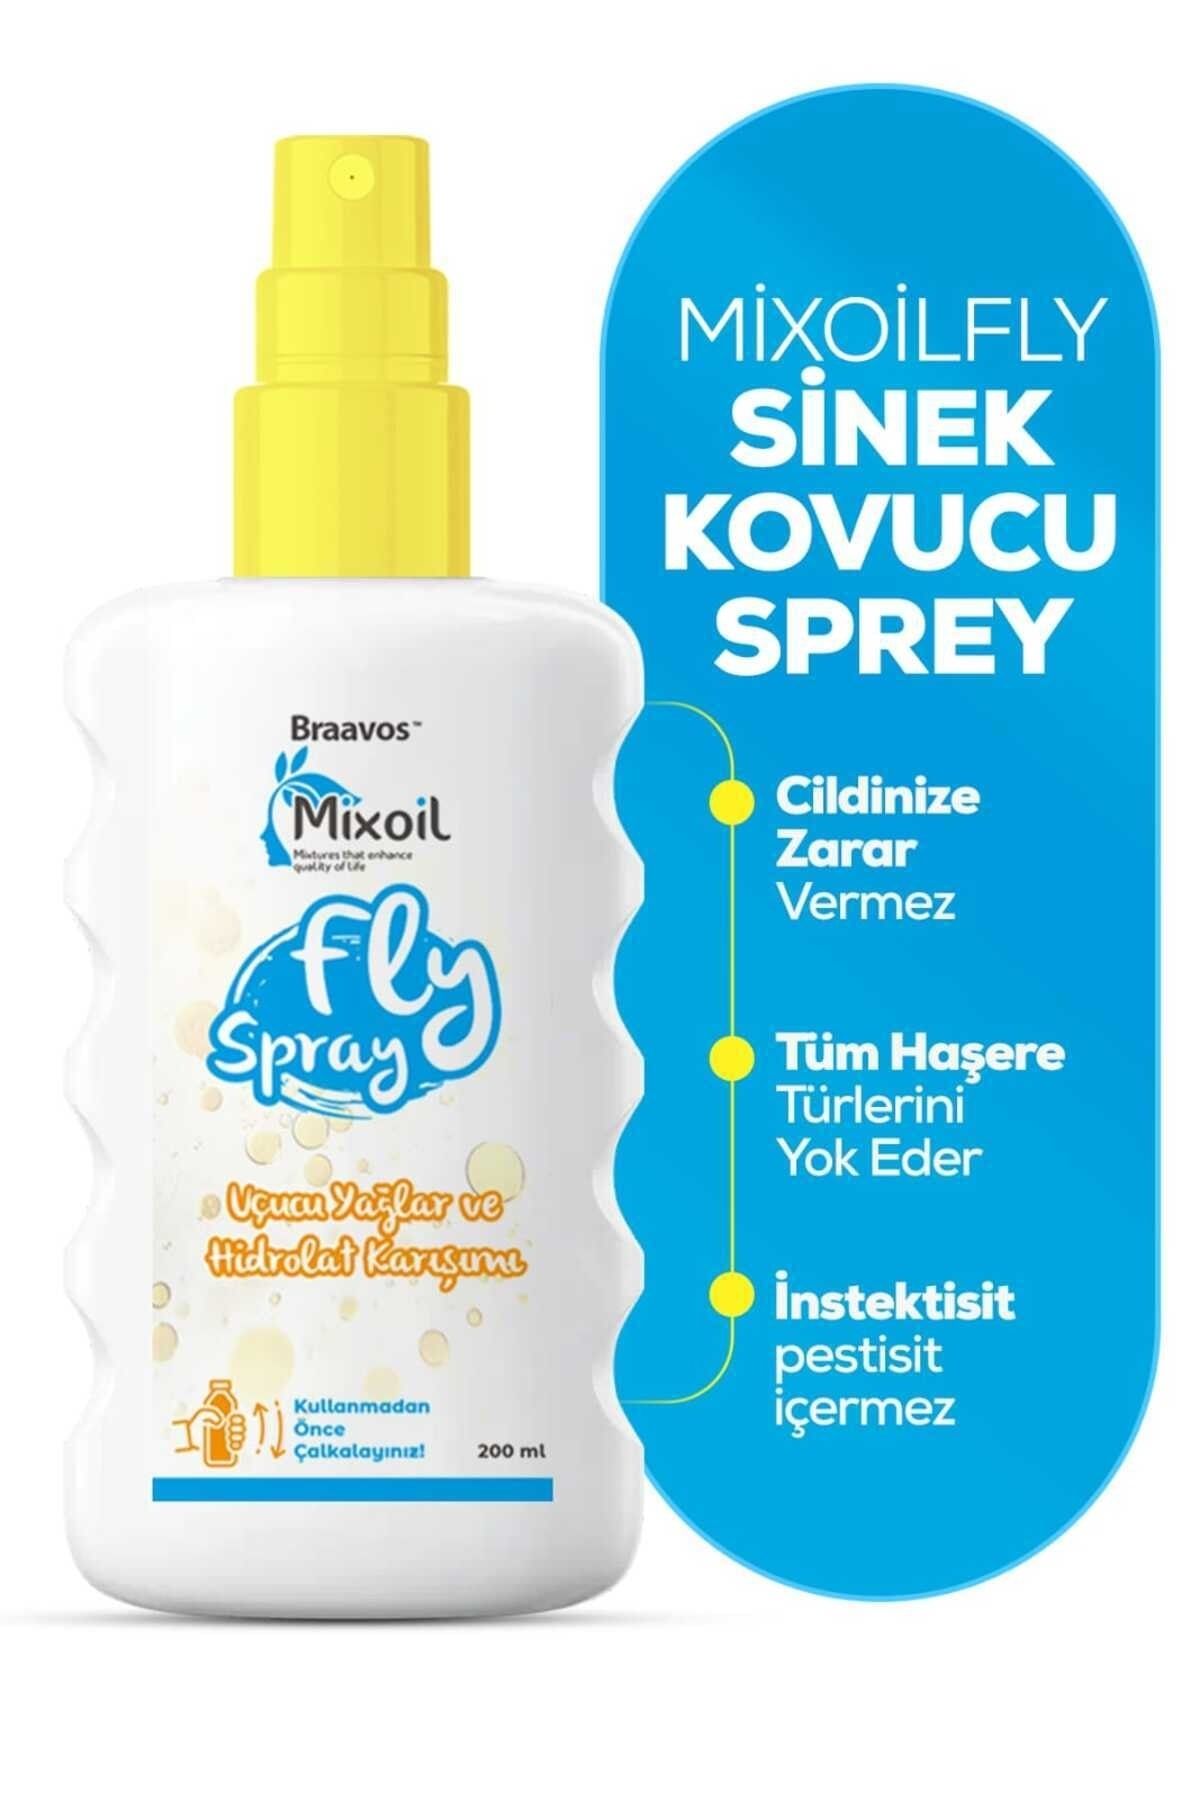 Mixoil Fly Sprey Sinek Kovucu 200 ml